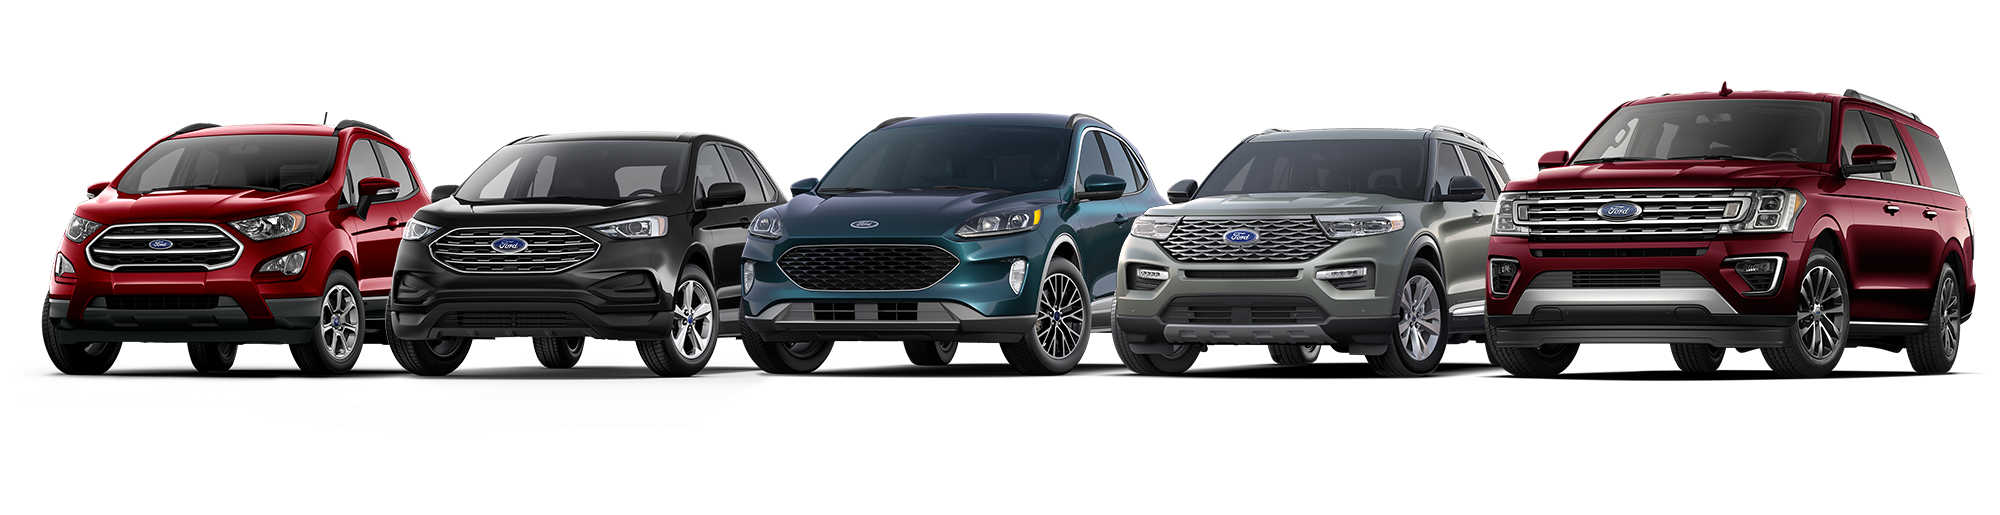 Explore the New Ford SUVs in Cedartown Peach State Ford